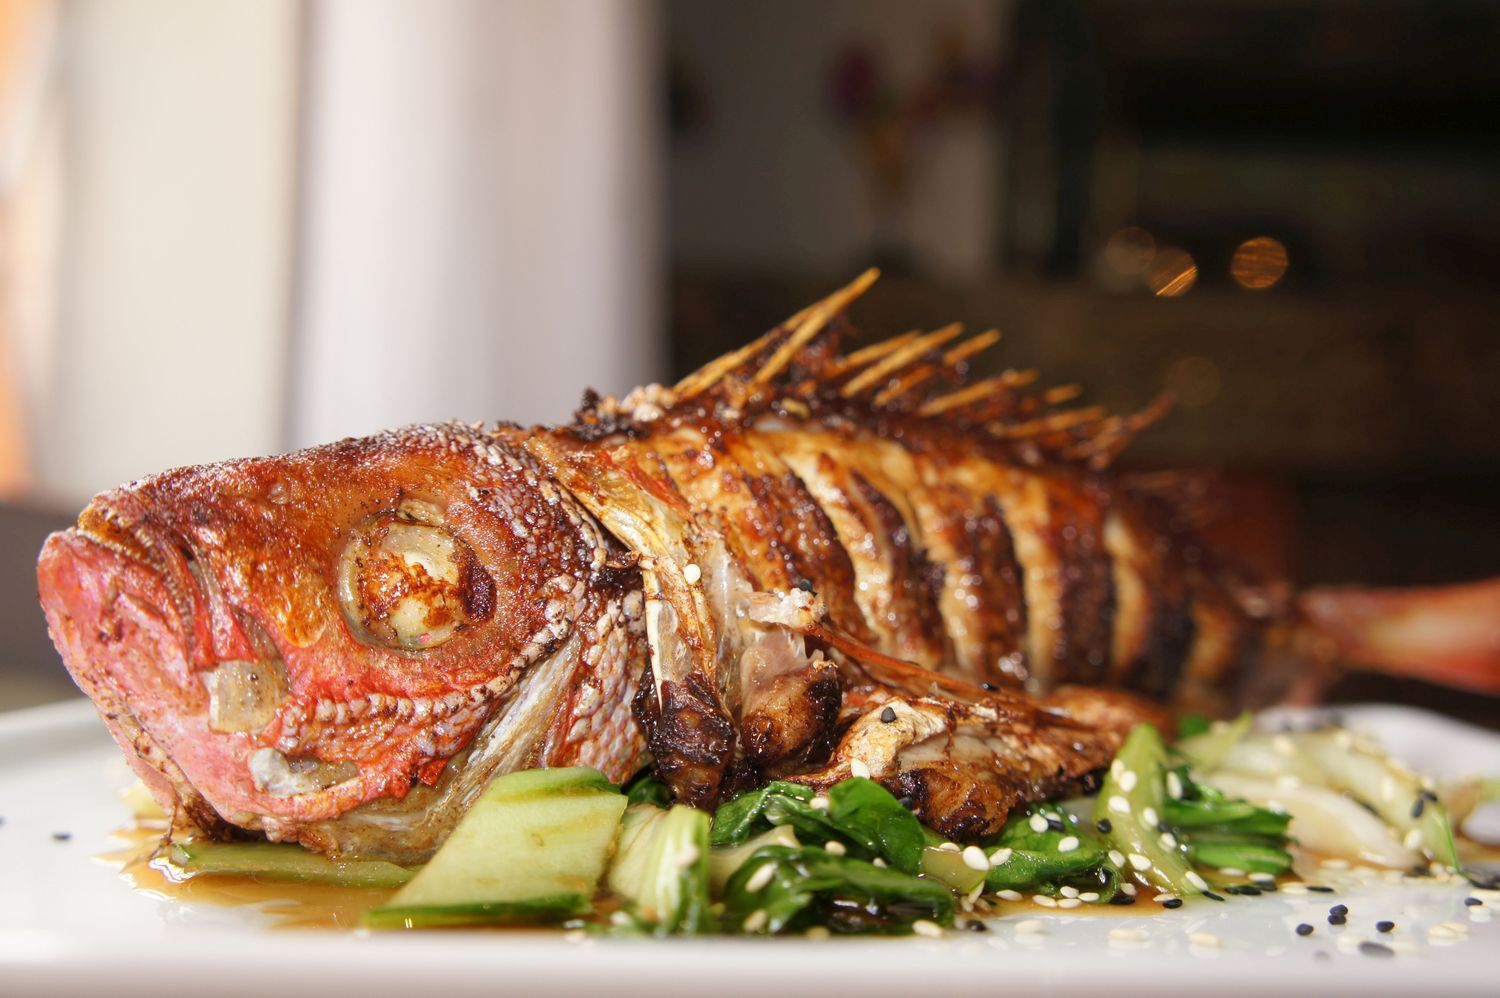 Asian Style Fish é um dos pratos em destaque no cardápio de jantar 